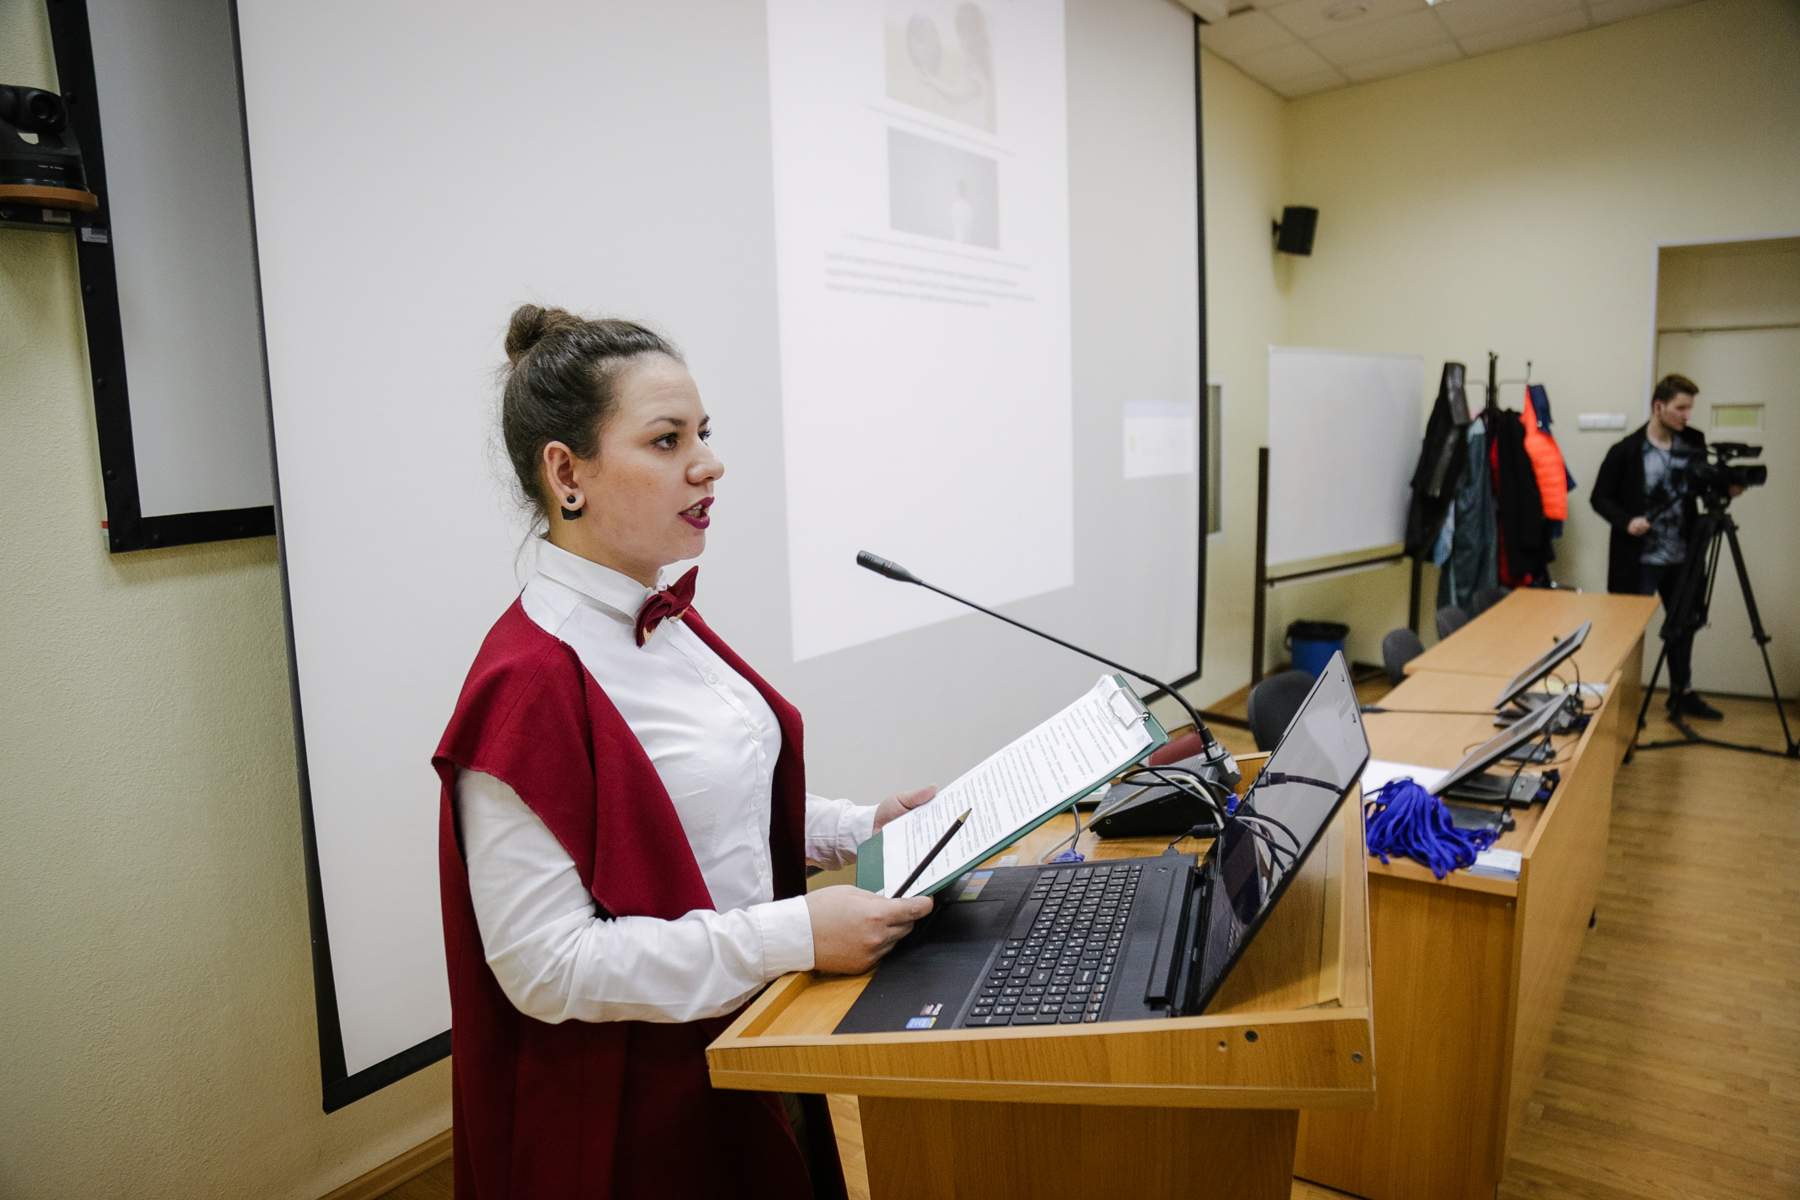 Всероссийская конференция и олимпиада для студентов-психологов проходит во ВГУЭС